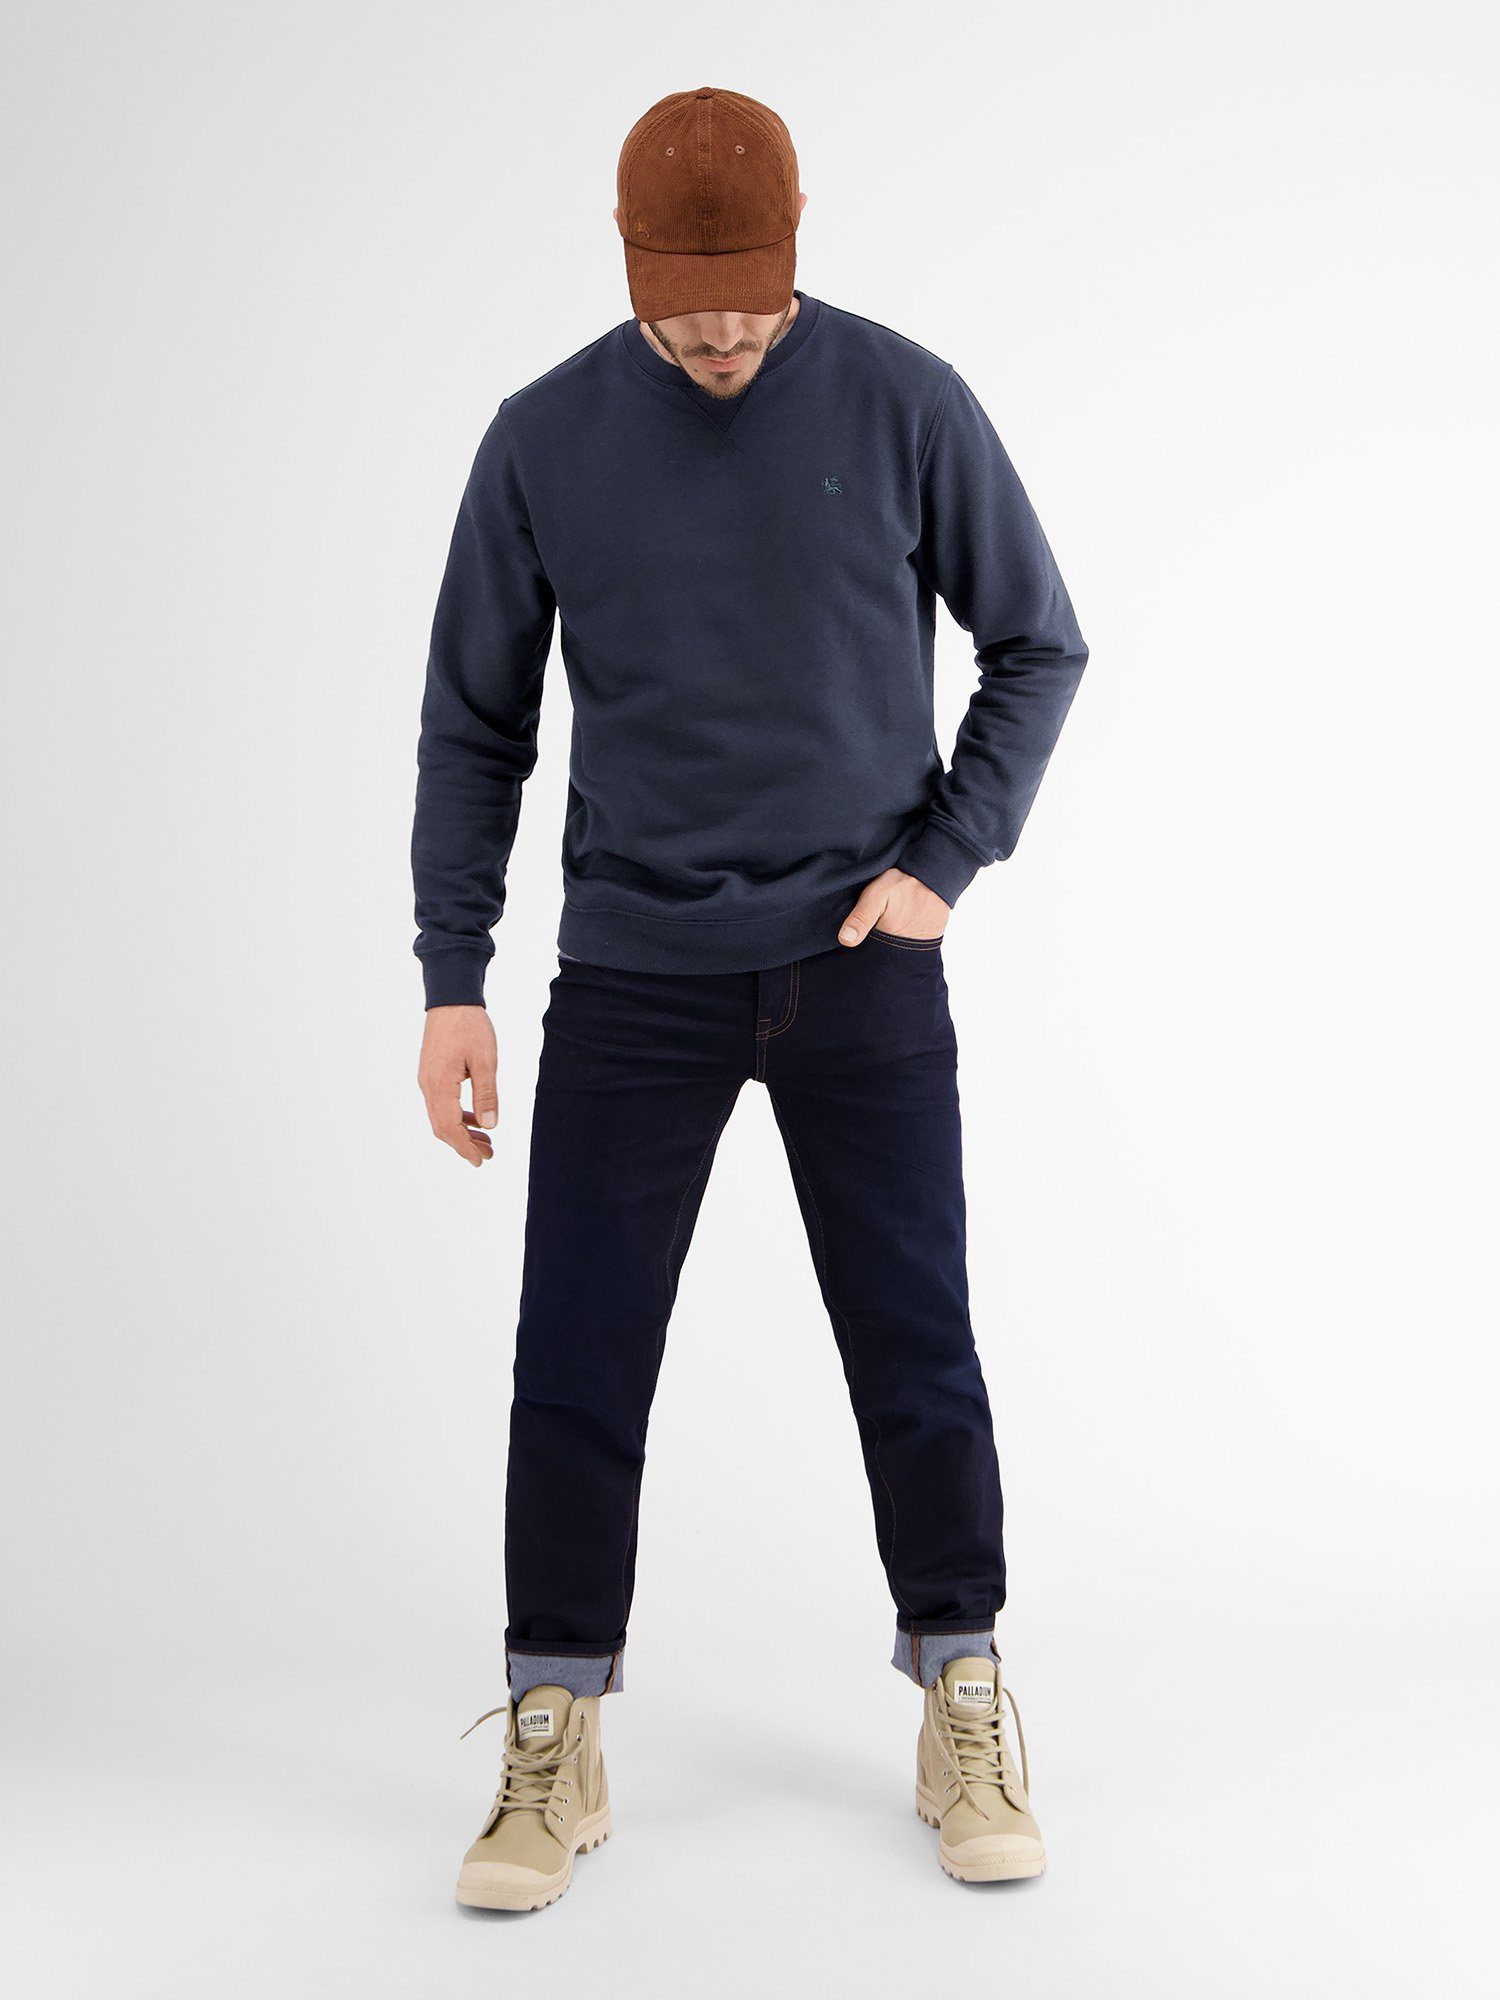 Sweatshirt LERROS Leichter LERROS in Sweater NAVY Strukturqualität CLASSIC